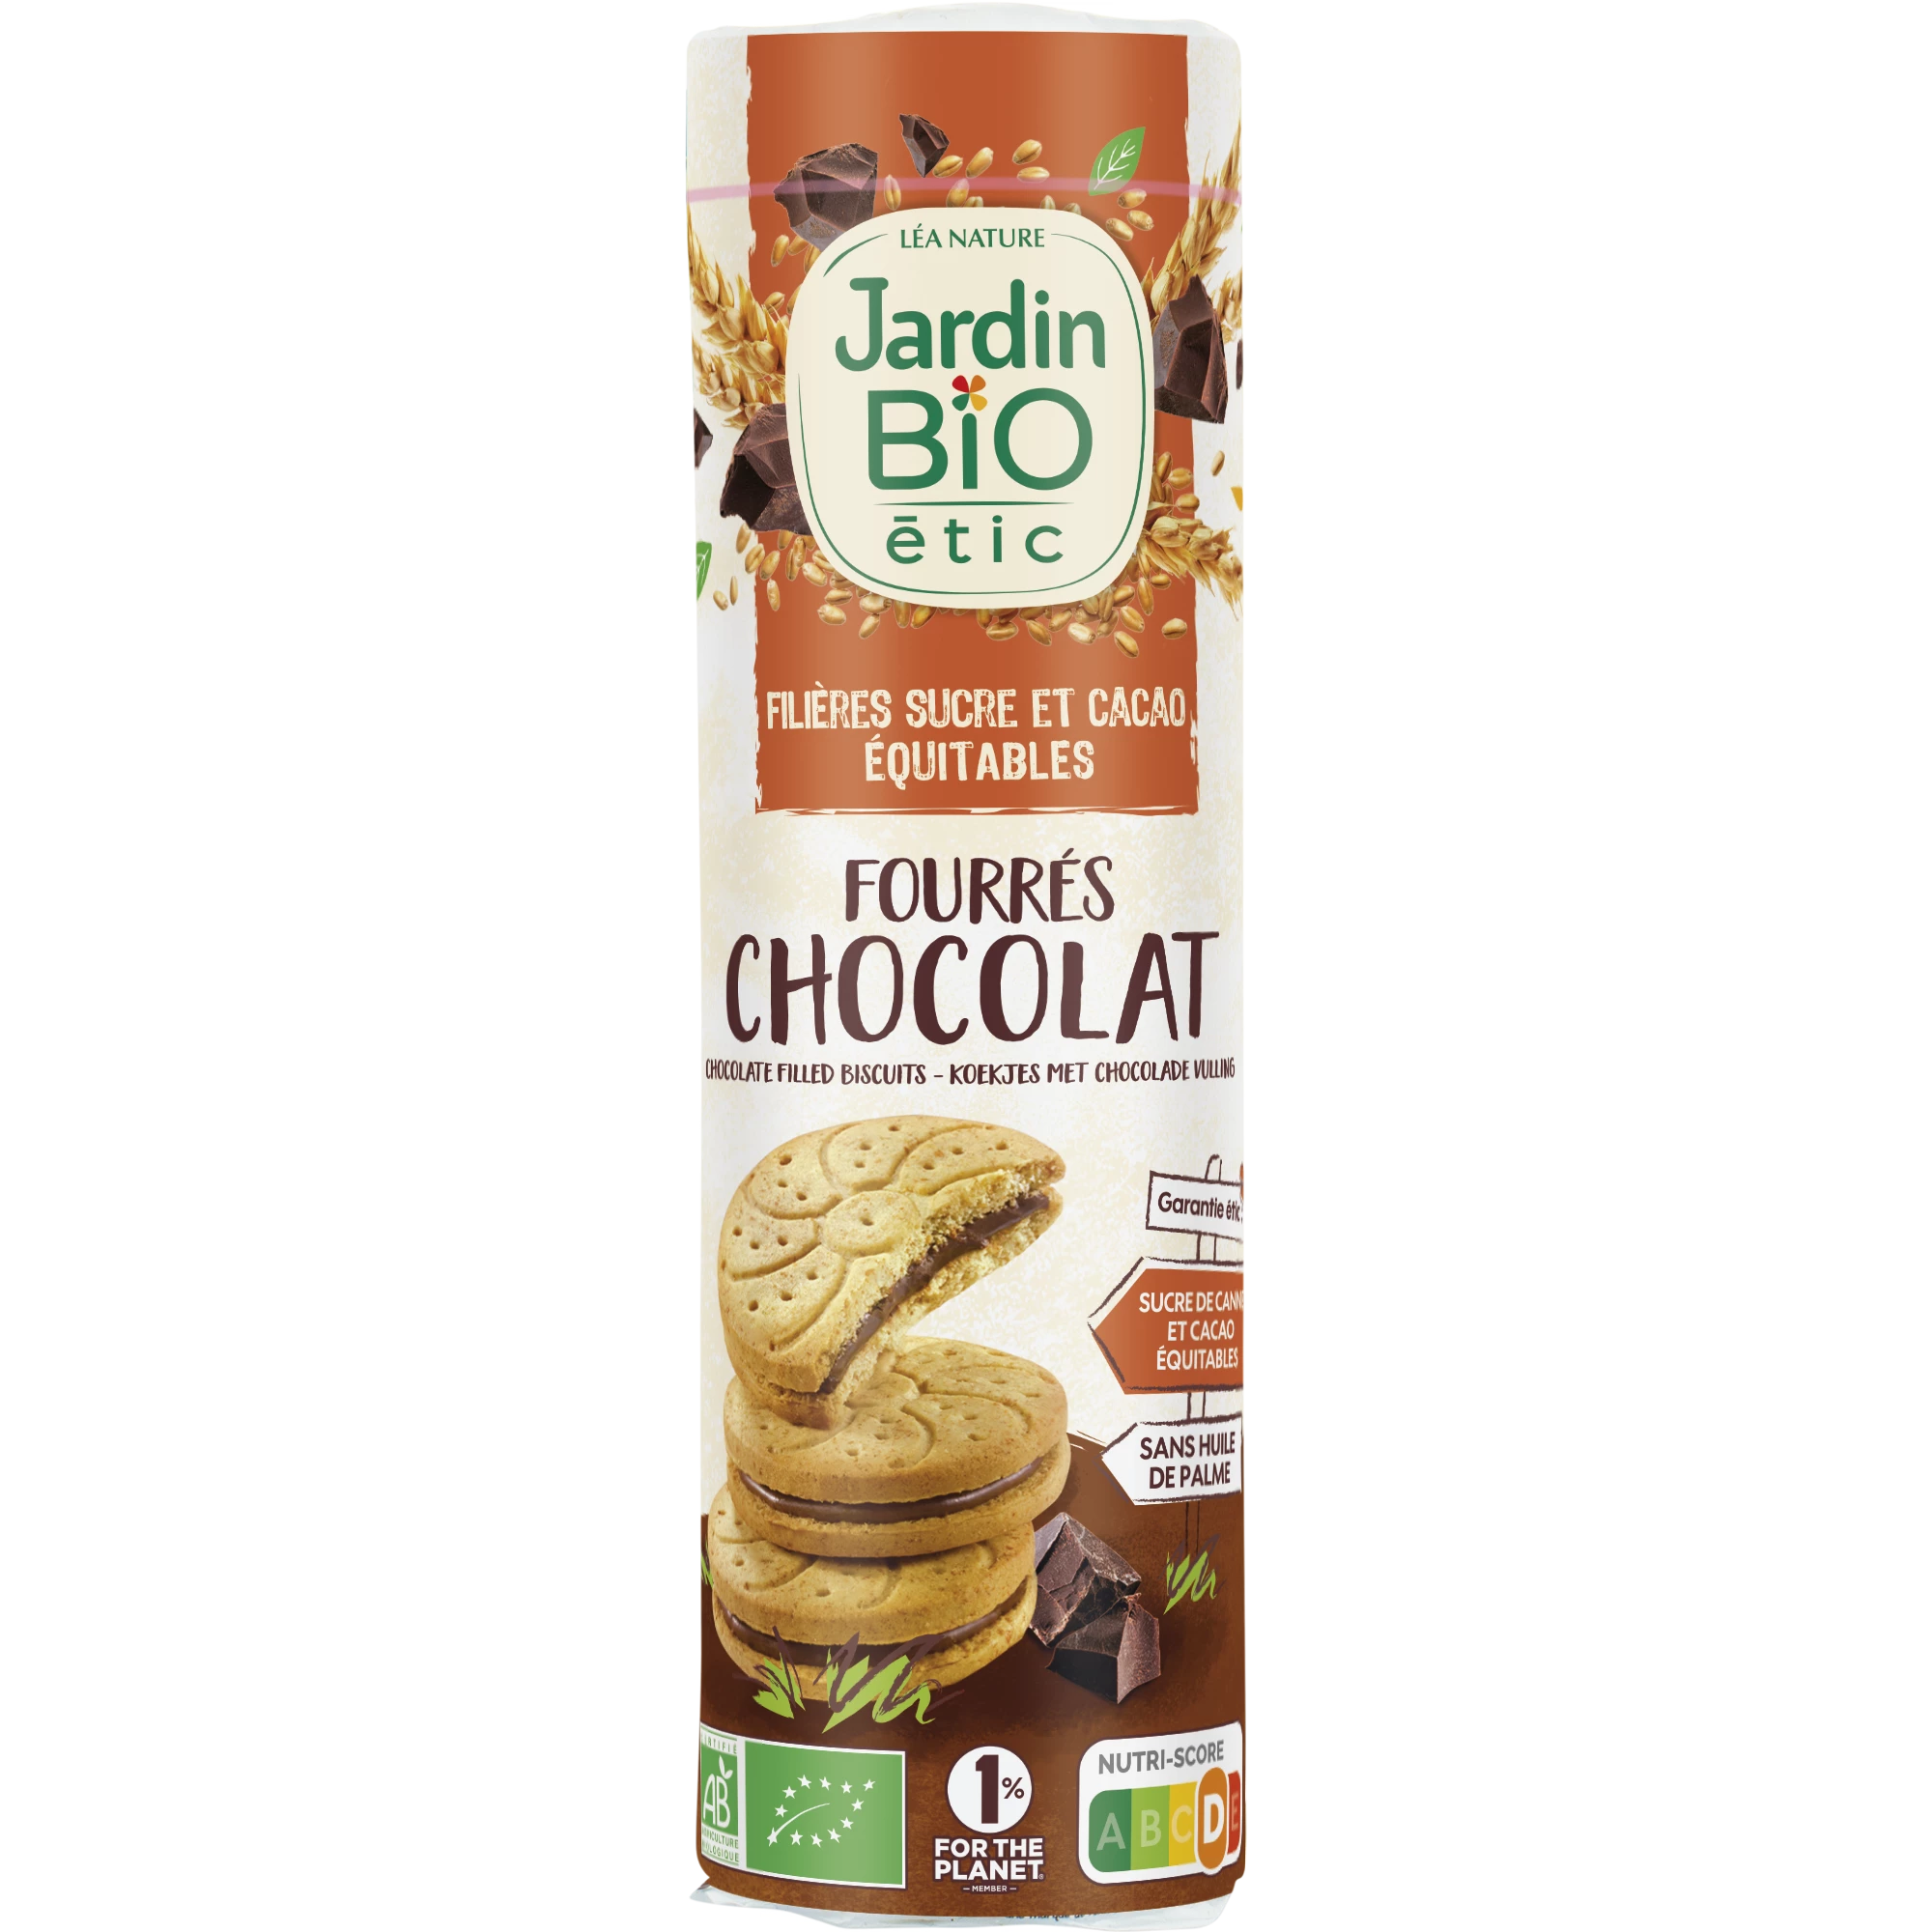 Biscuits fourrés chocolat, 300g, JARDIN Bio ETIC